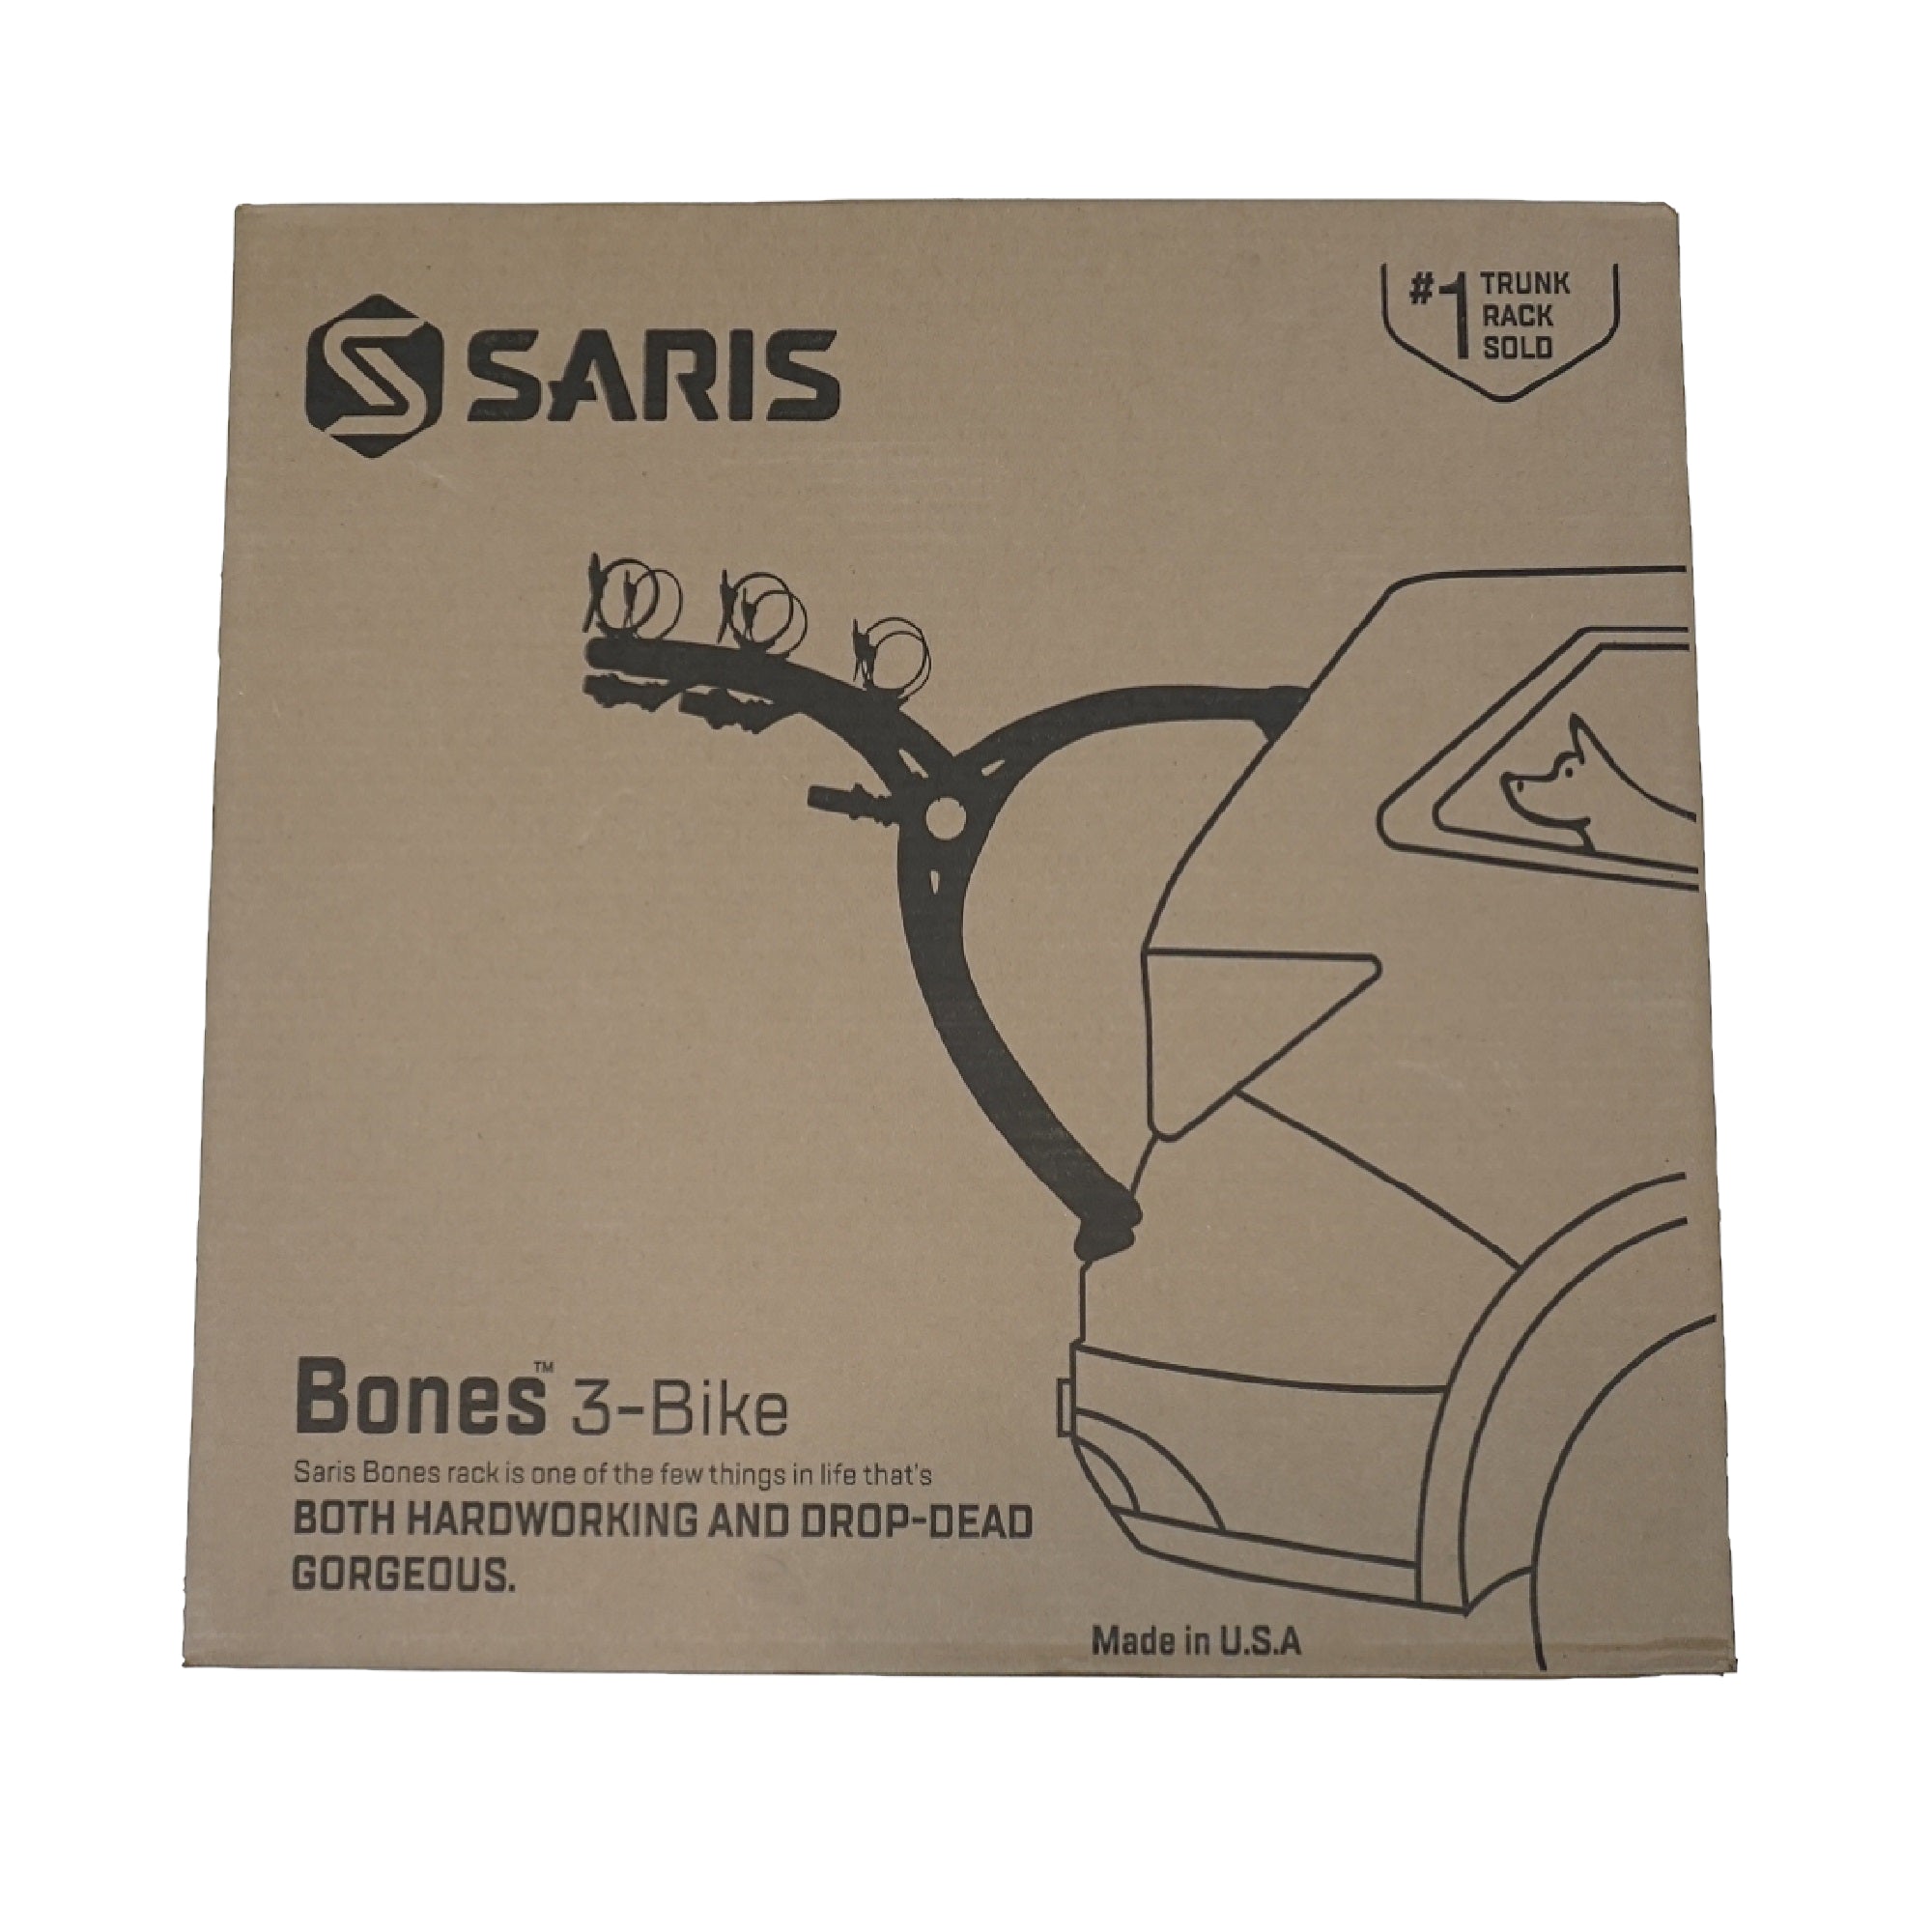 Saris Bones 3 Bike Trunk Rack - The Bikesmiths